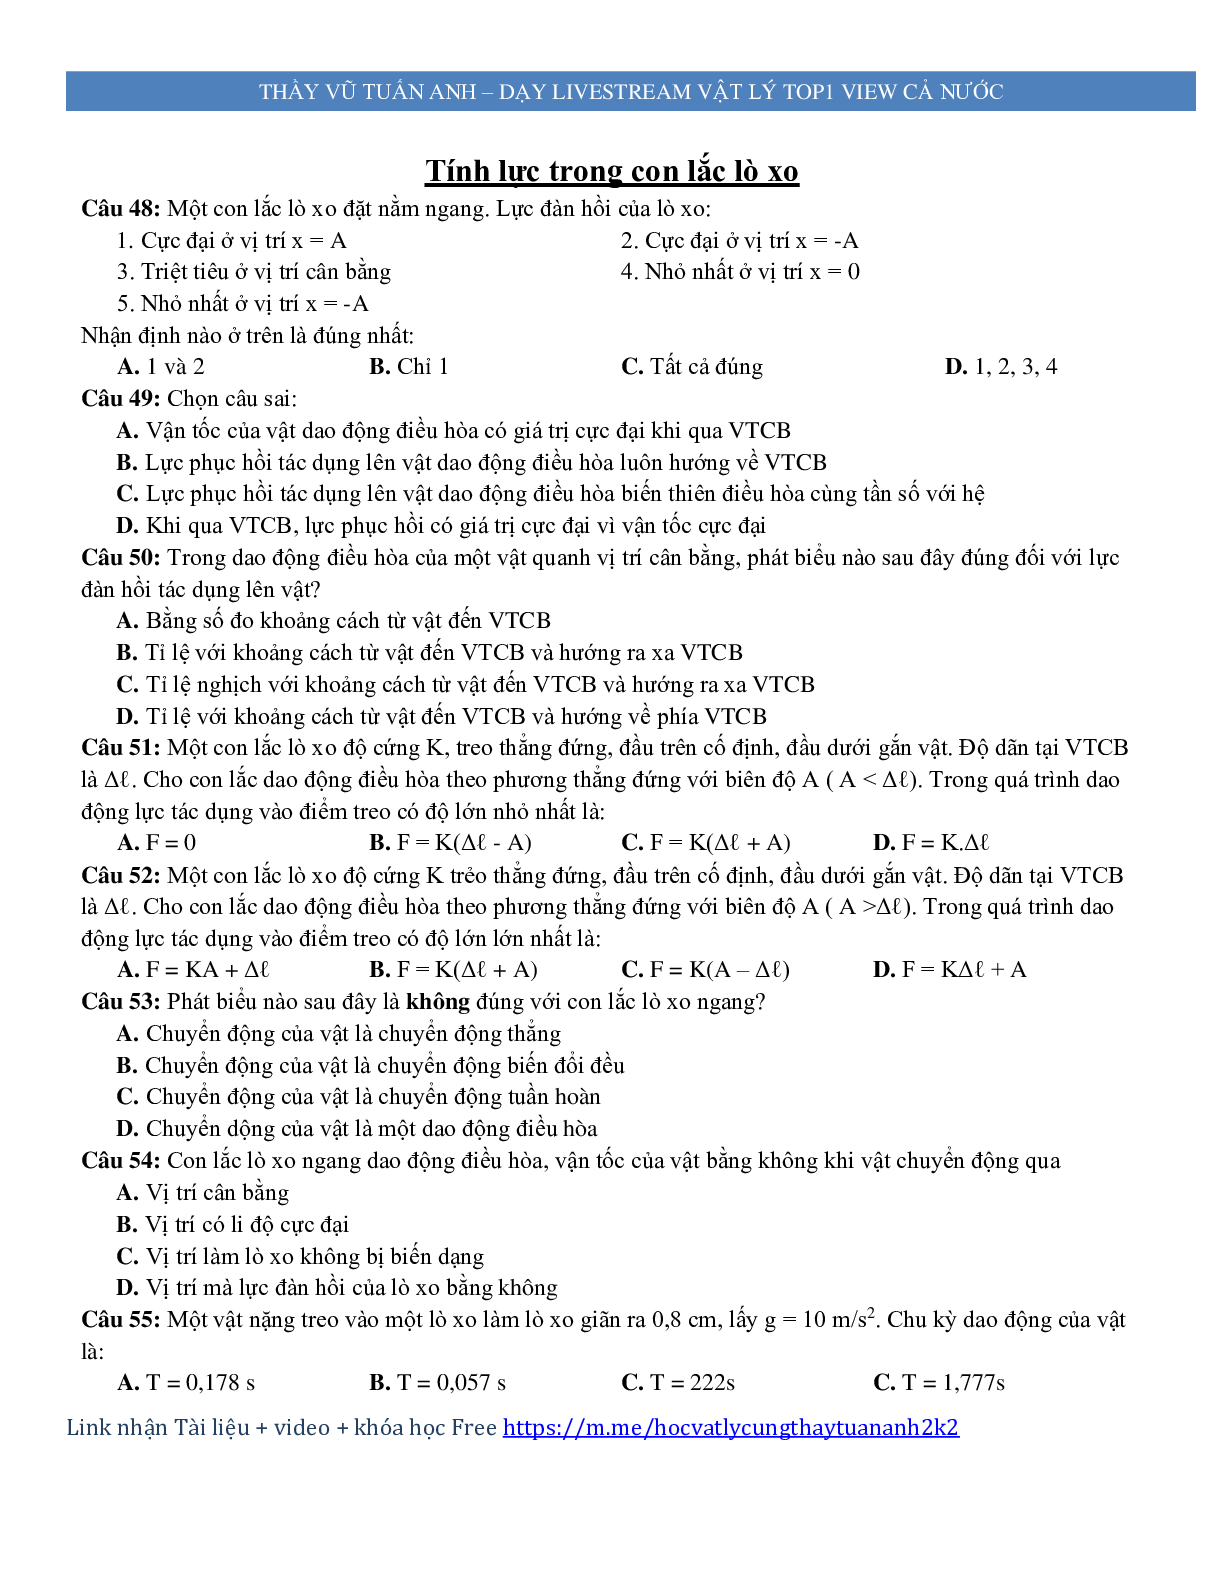 600 câu trắc nghiệm lý thuyết môn Vật lý ôn thi THPT Quốc Gia (trang 7)